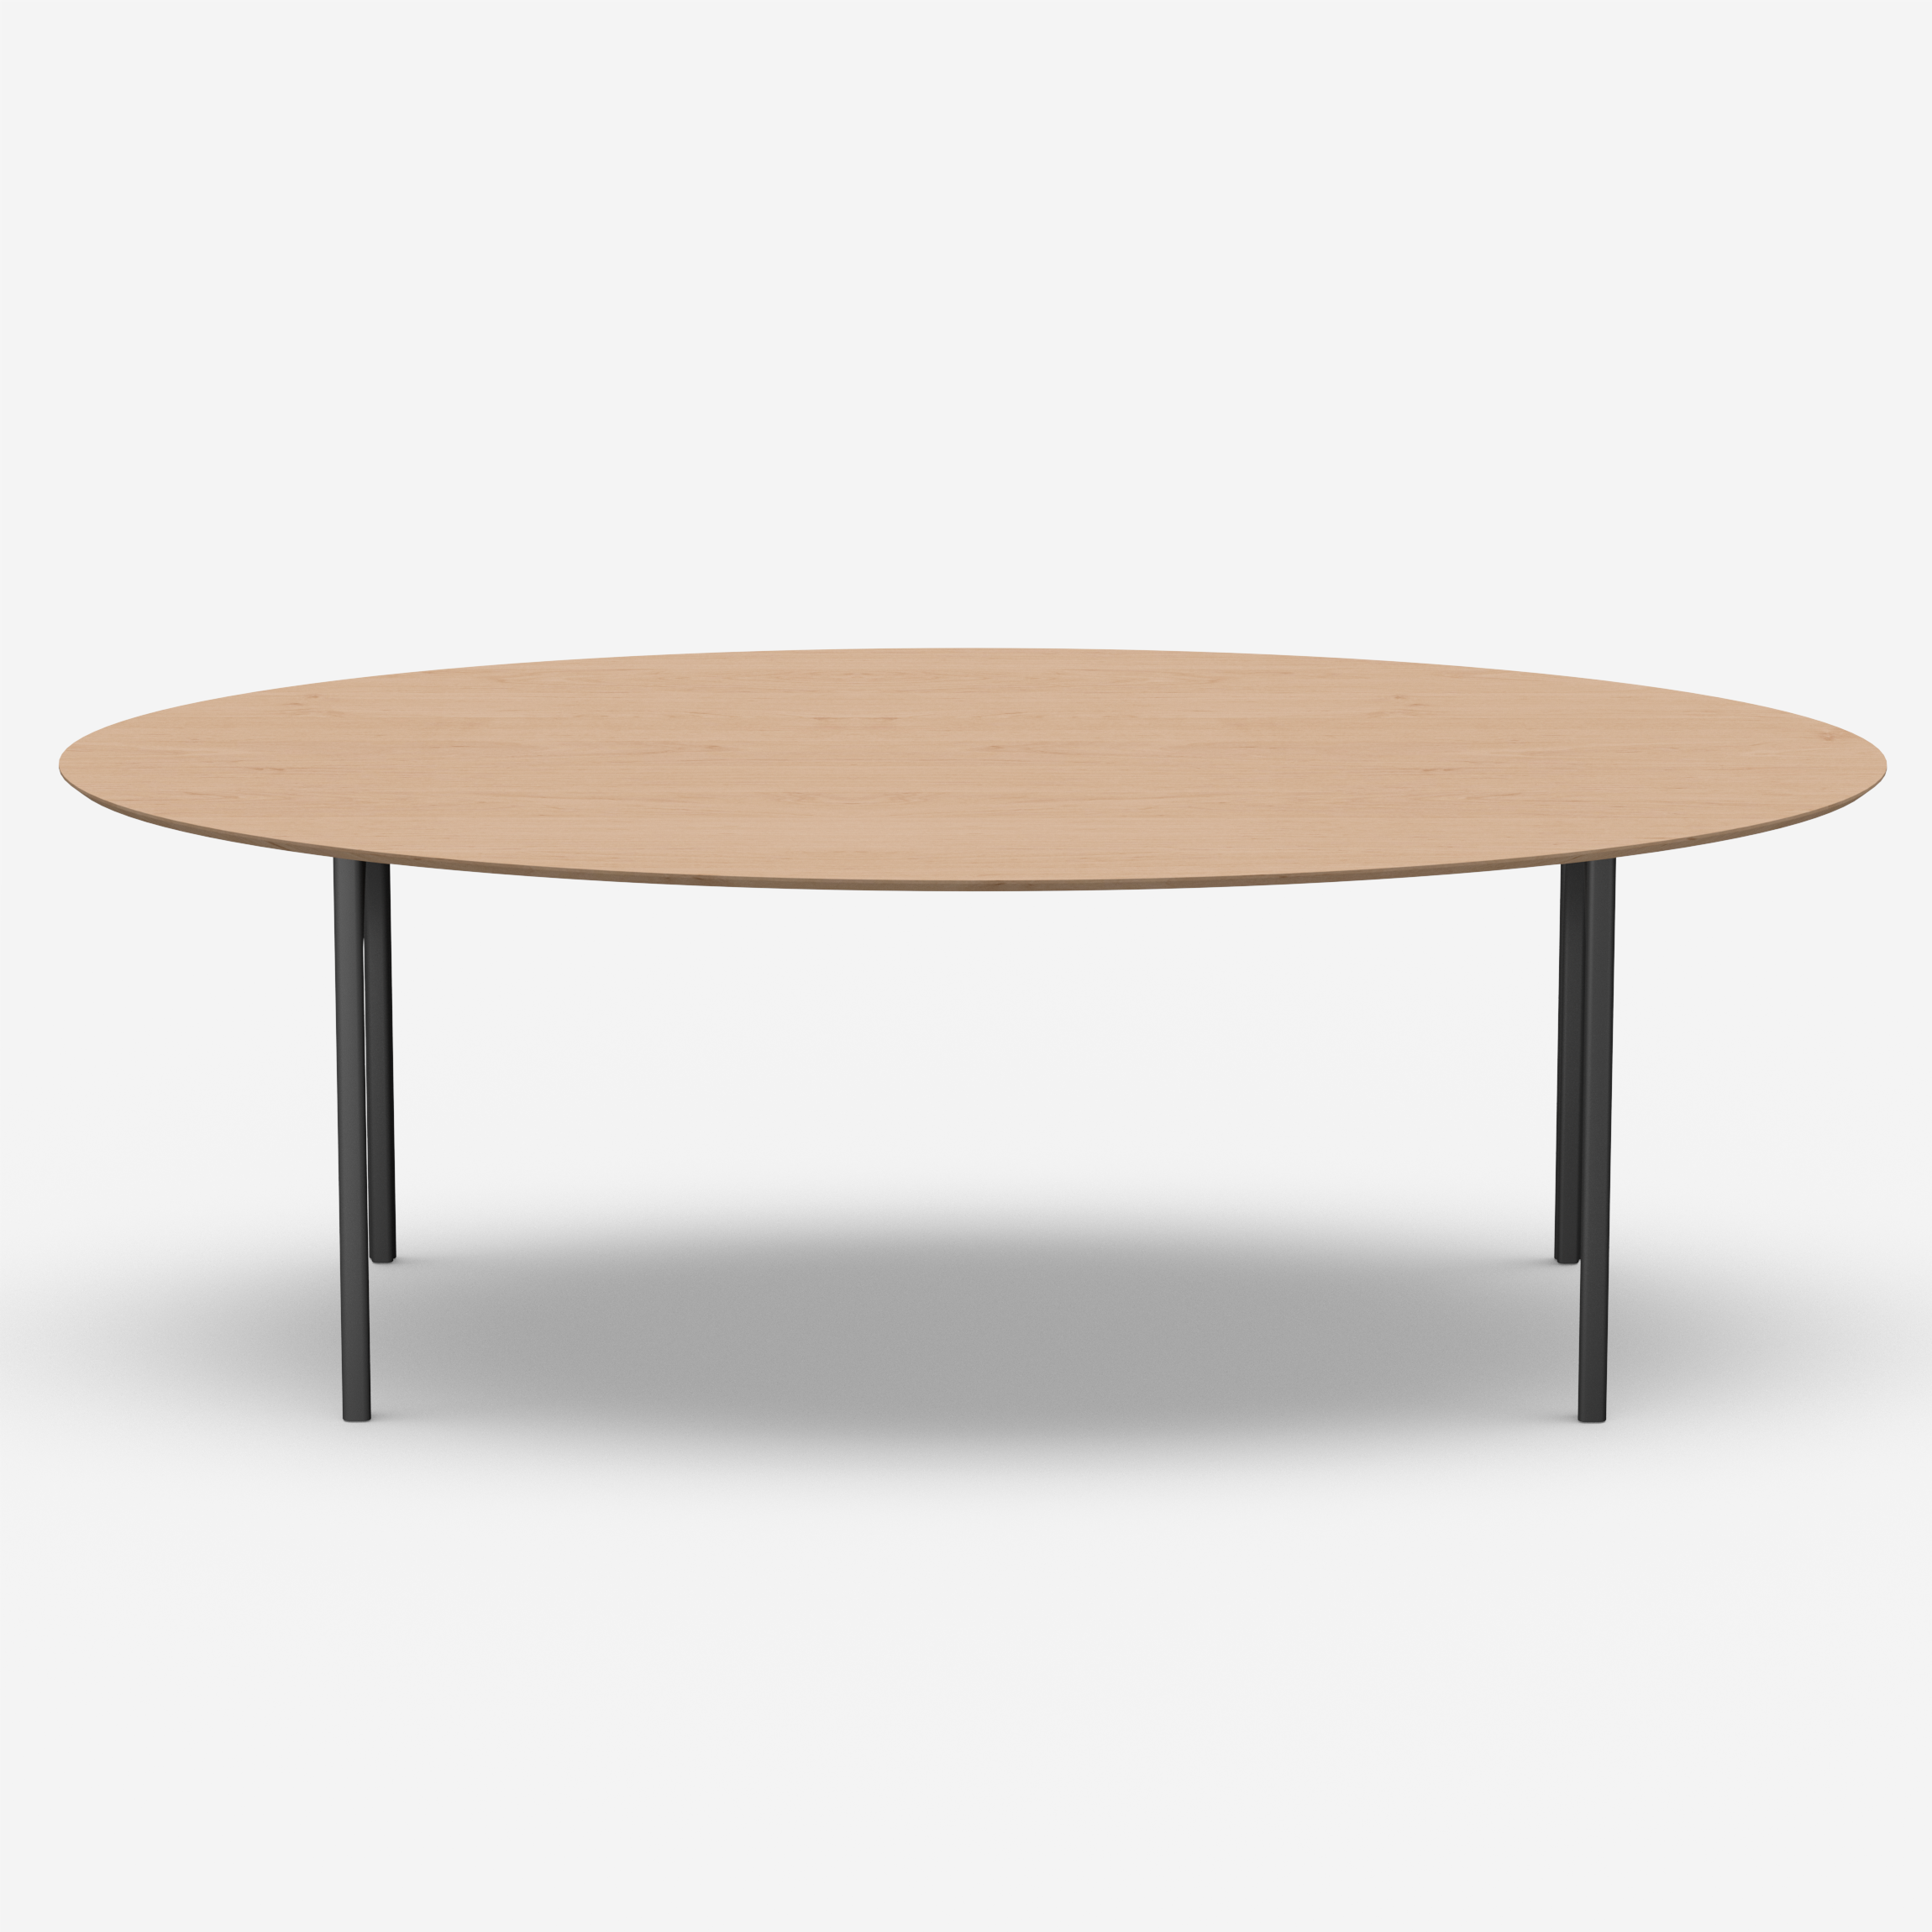 Loop - Table (Oval, 240N)